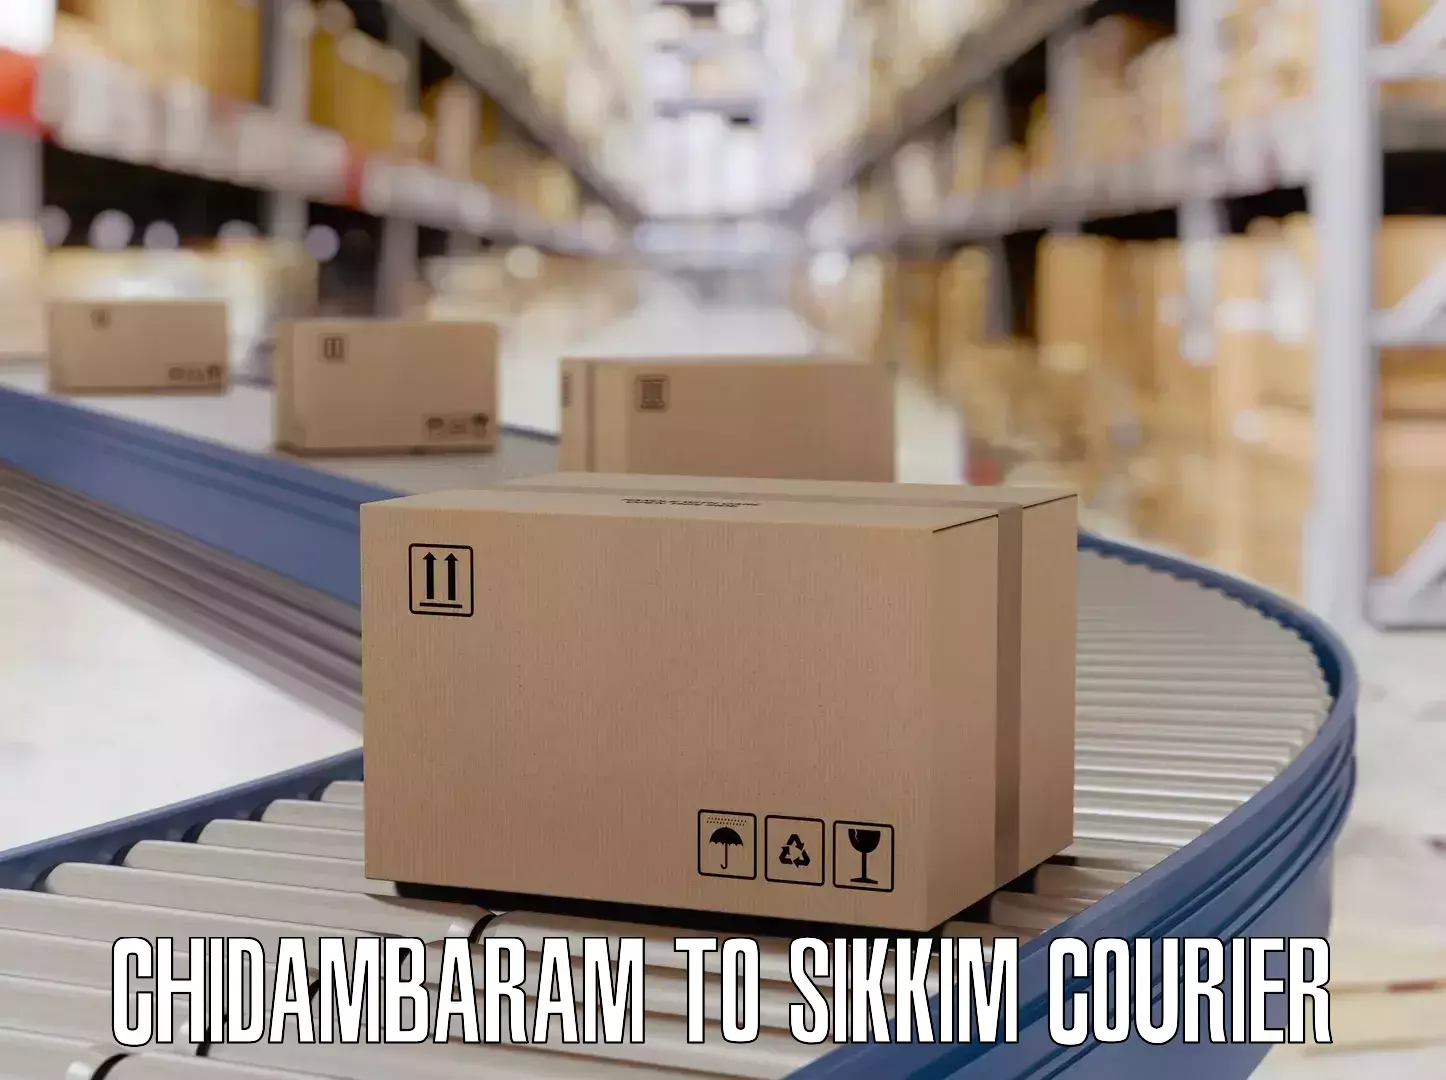 Baggage shipping service Chidambaram to Sikkim